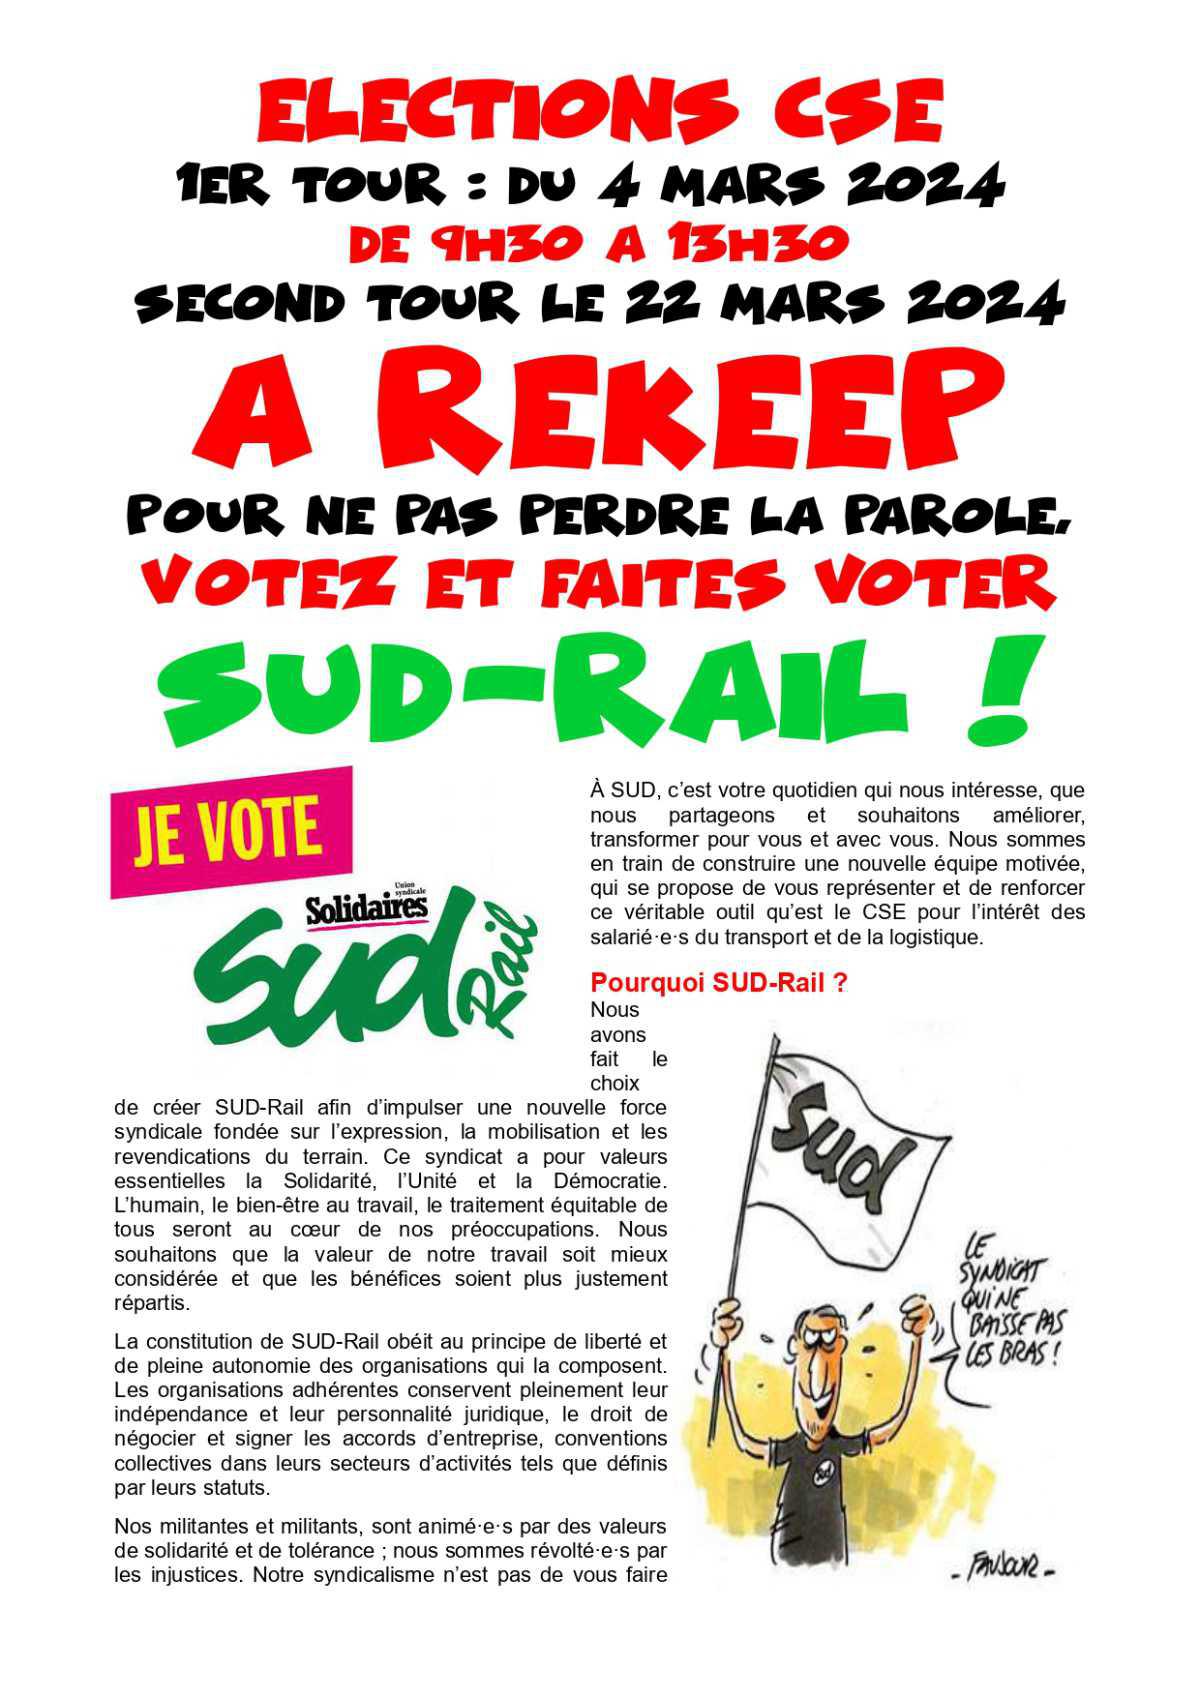 Elections CSE chez REKEEP, pour ne pas perdre le nord, votez SUD-Rail !